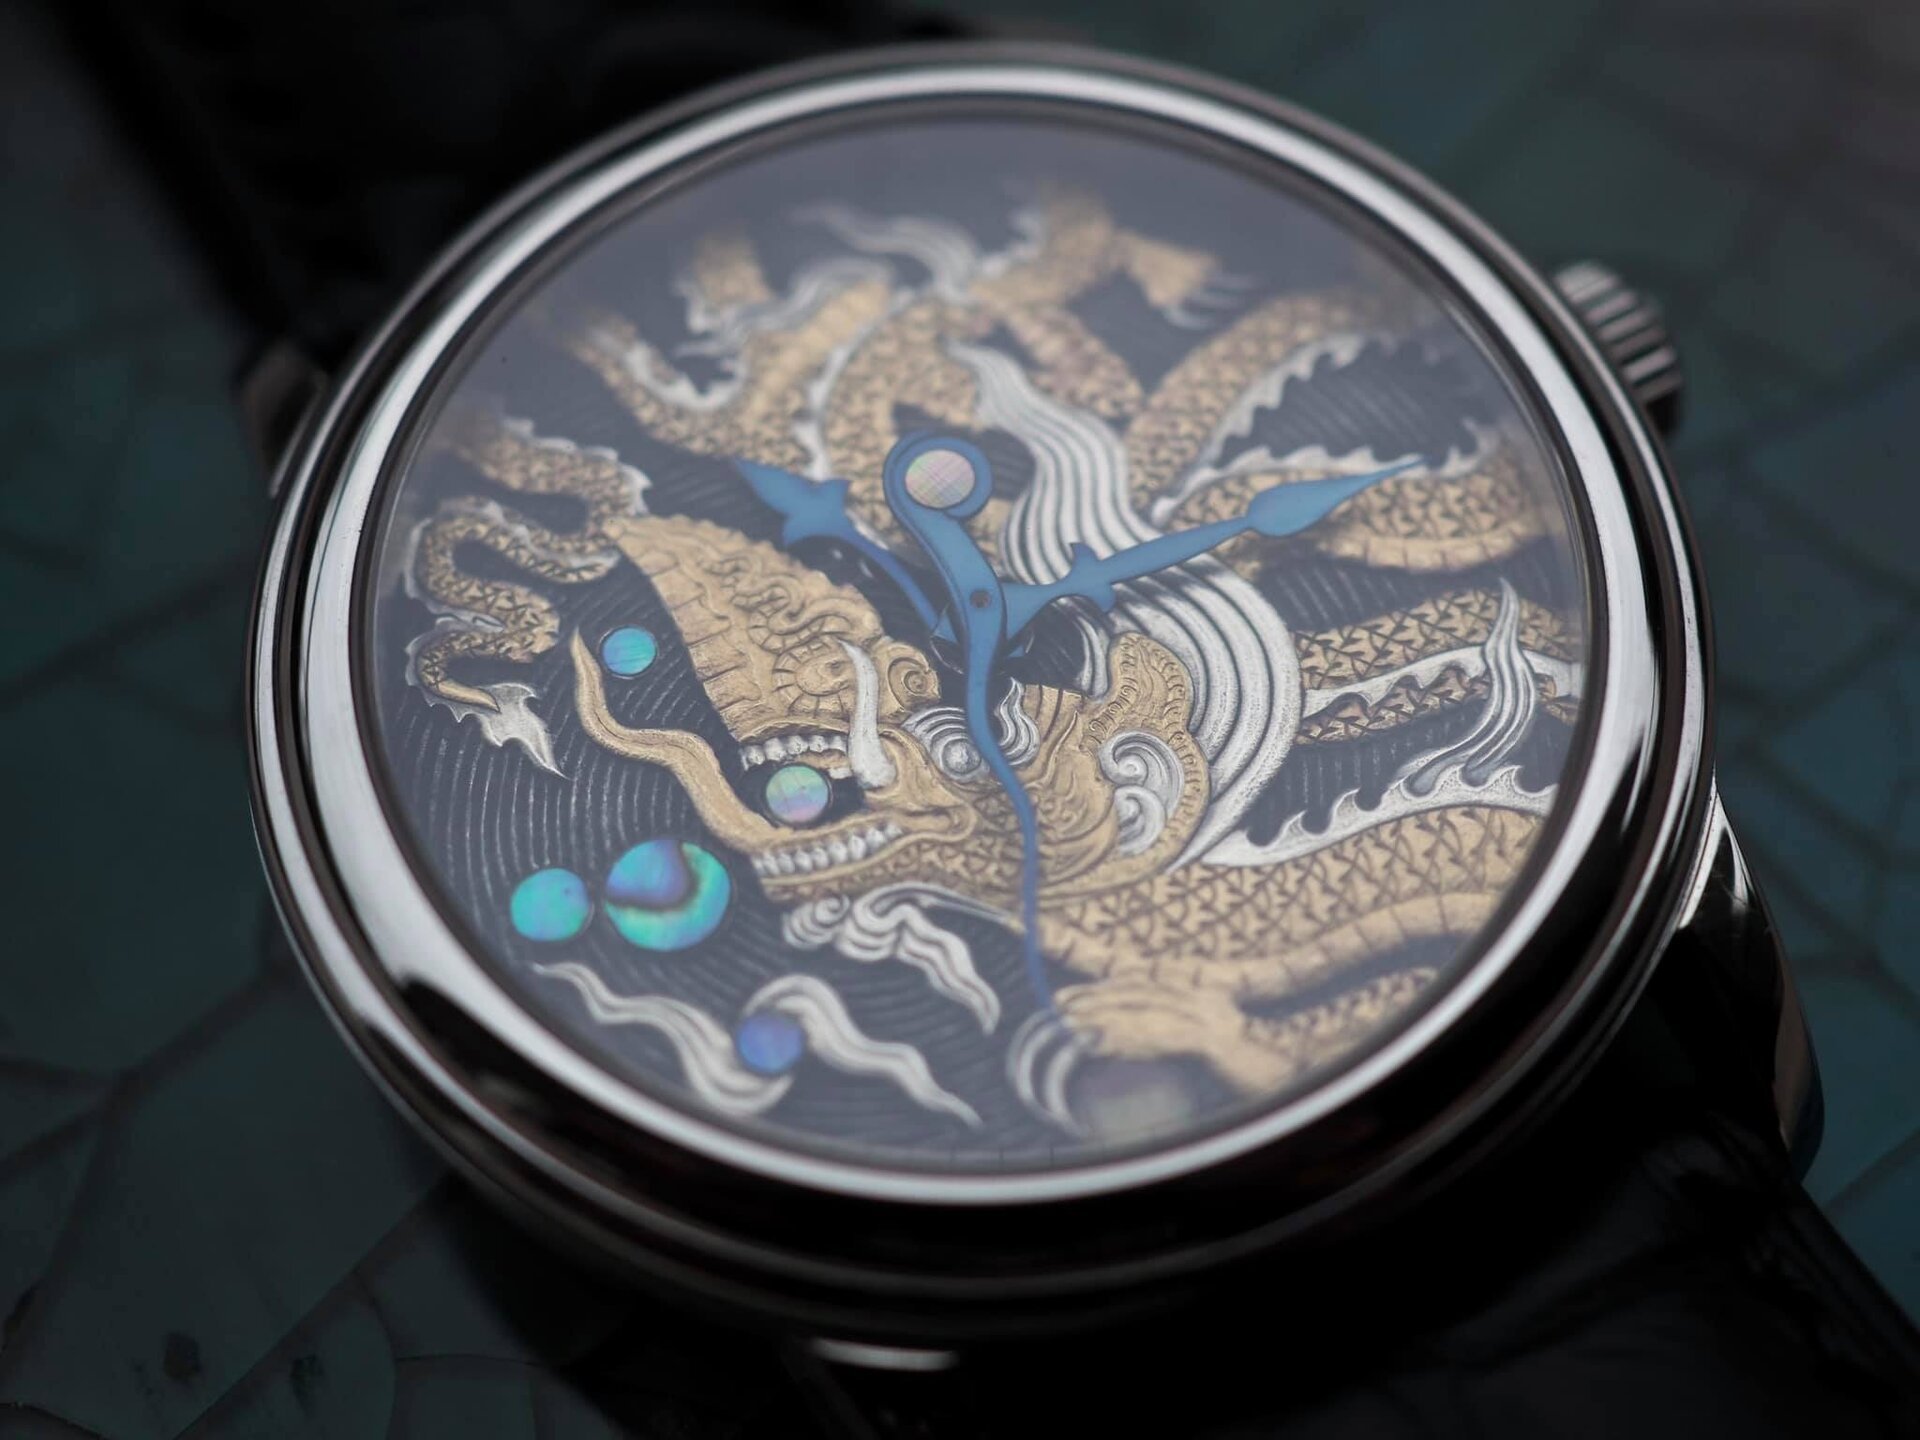 Chiếc đồng hồ bằng titan được thợ thủ công Việt định giá 300 triệu đồng - 12